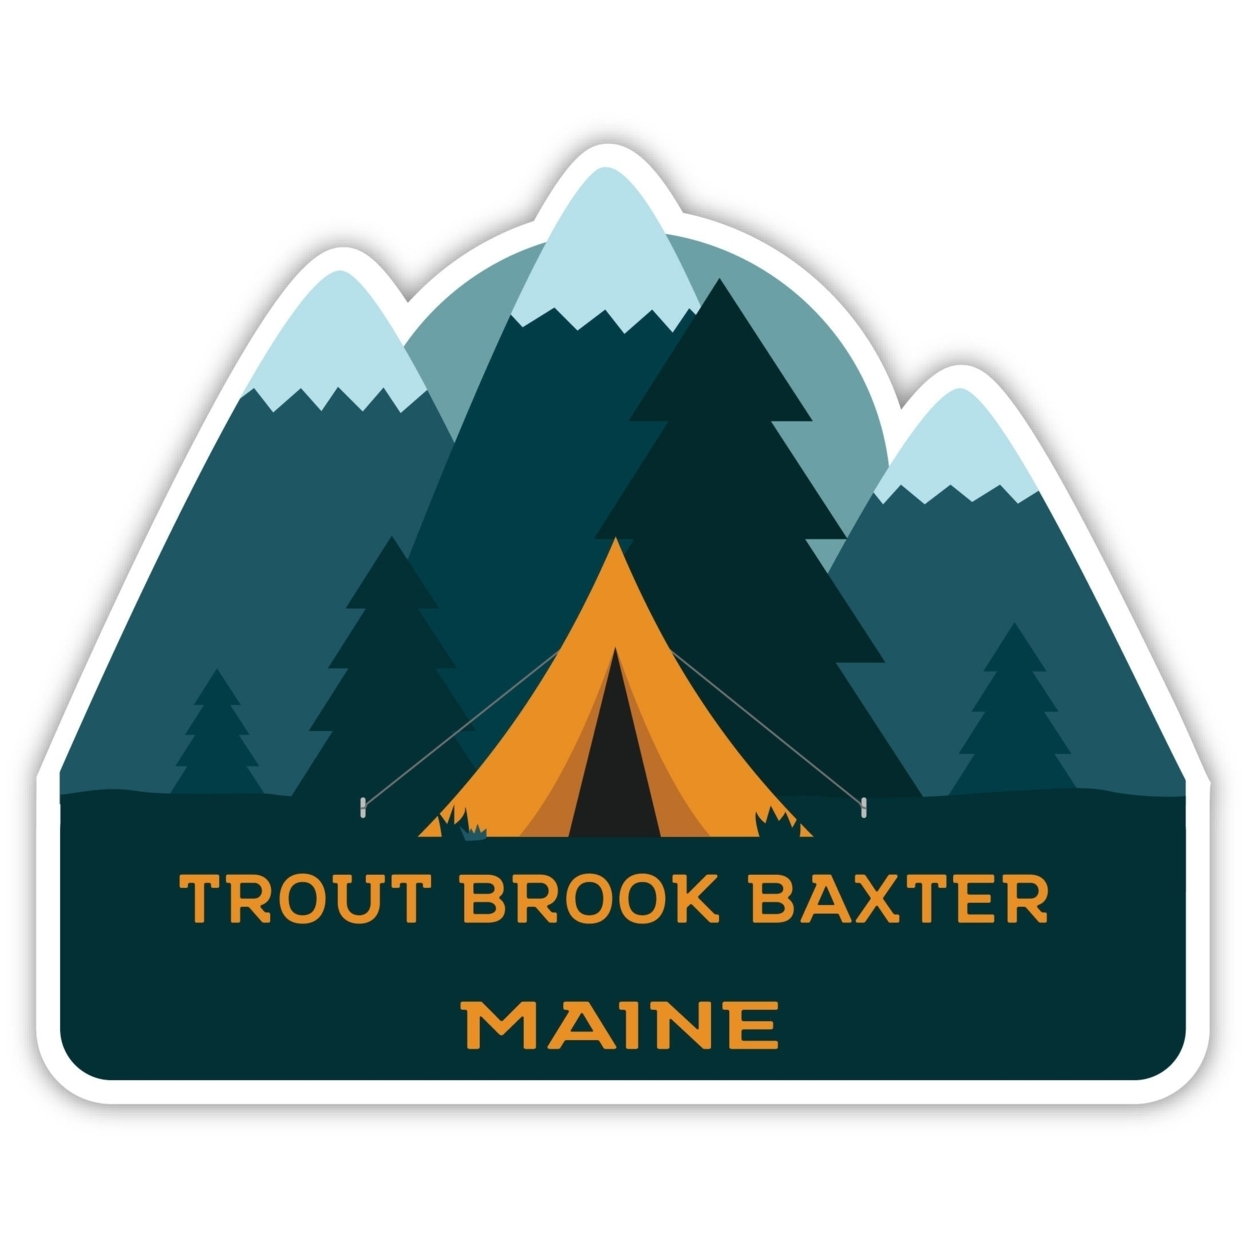 Trout Brook Baxter Maine Souvenir Decorative Stickers (Choose Theme And Size) - Single Unit, 2-Inch, Tent